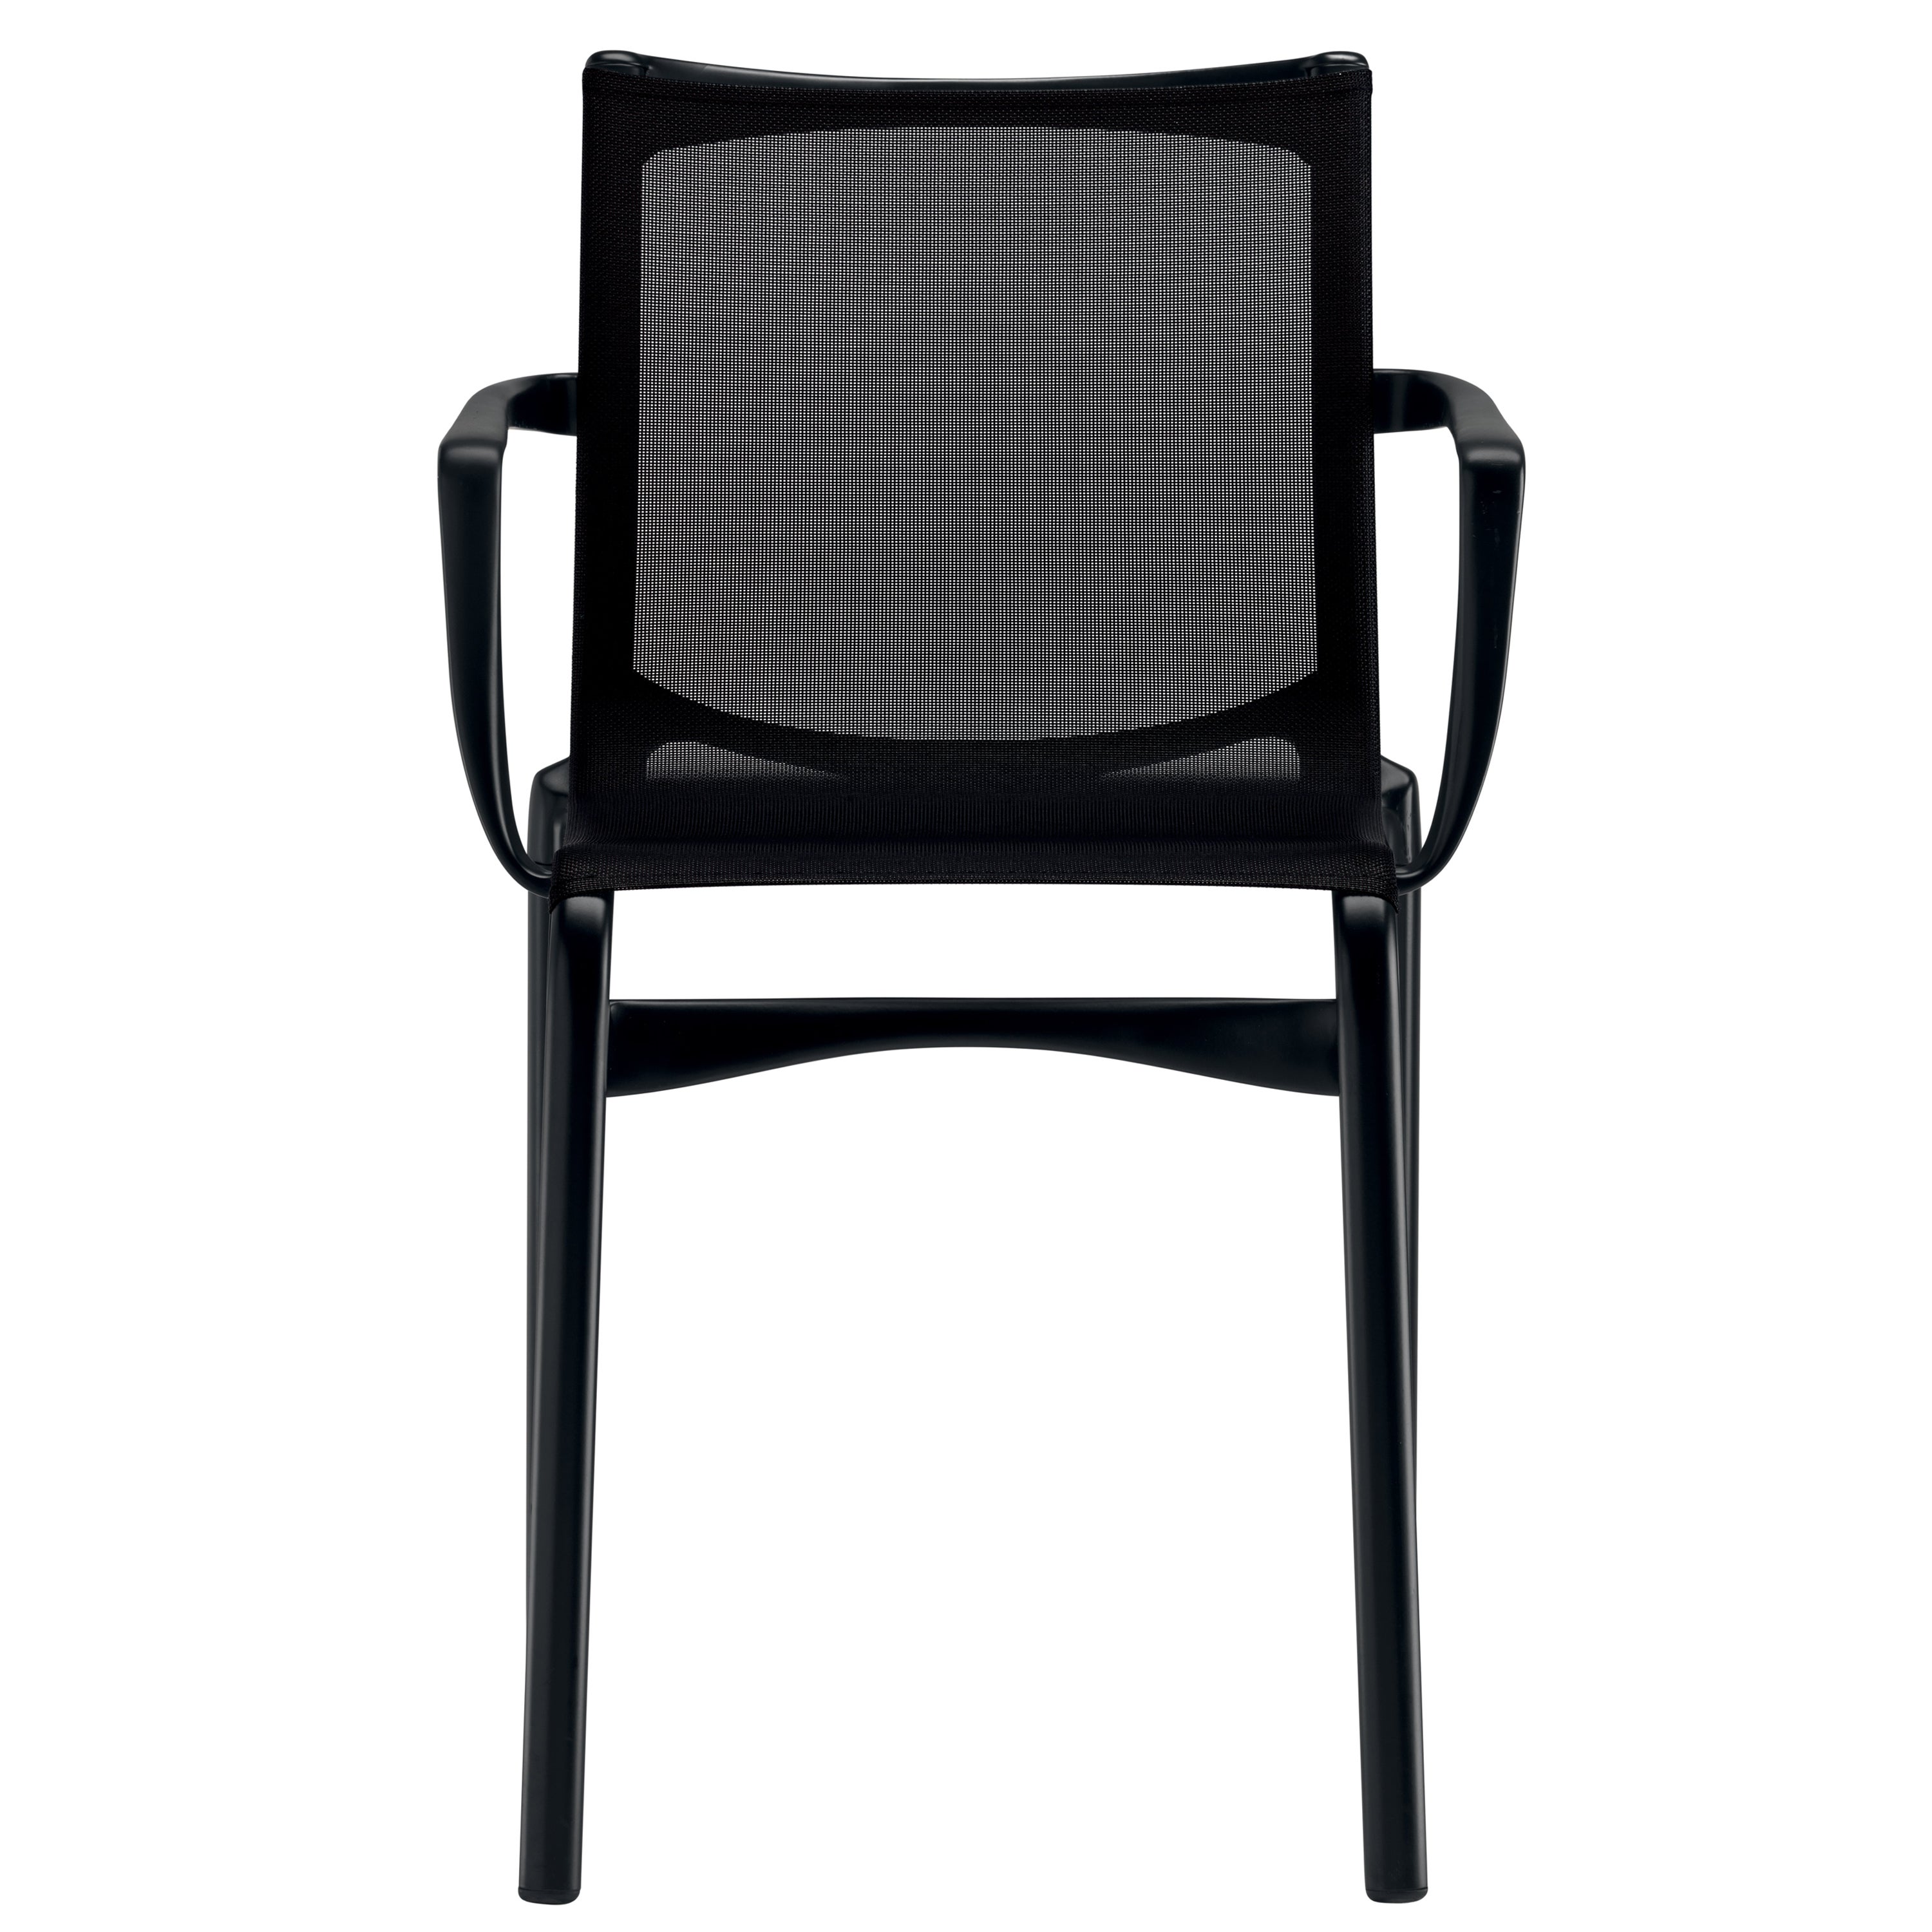 Alias 417 Stuhl mit hohem Gestell aus schwarzem Mesh und schwarz lackiertem Aluminiumrahmen